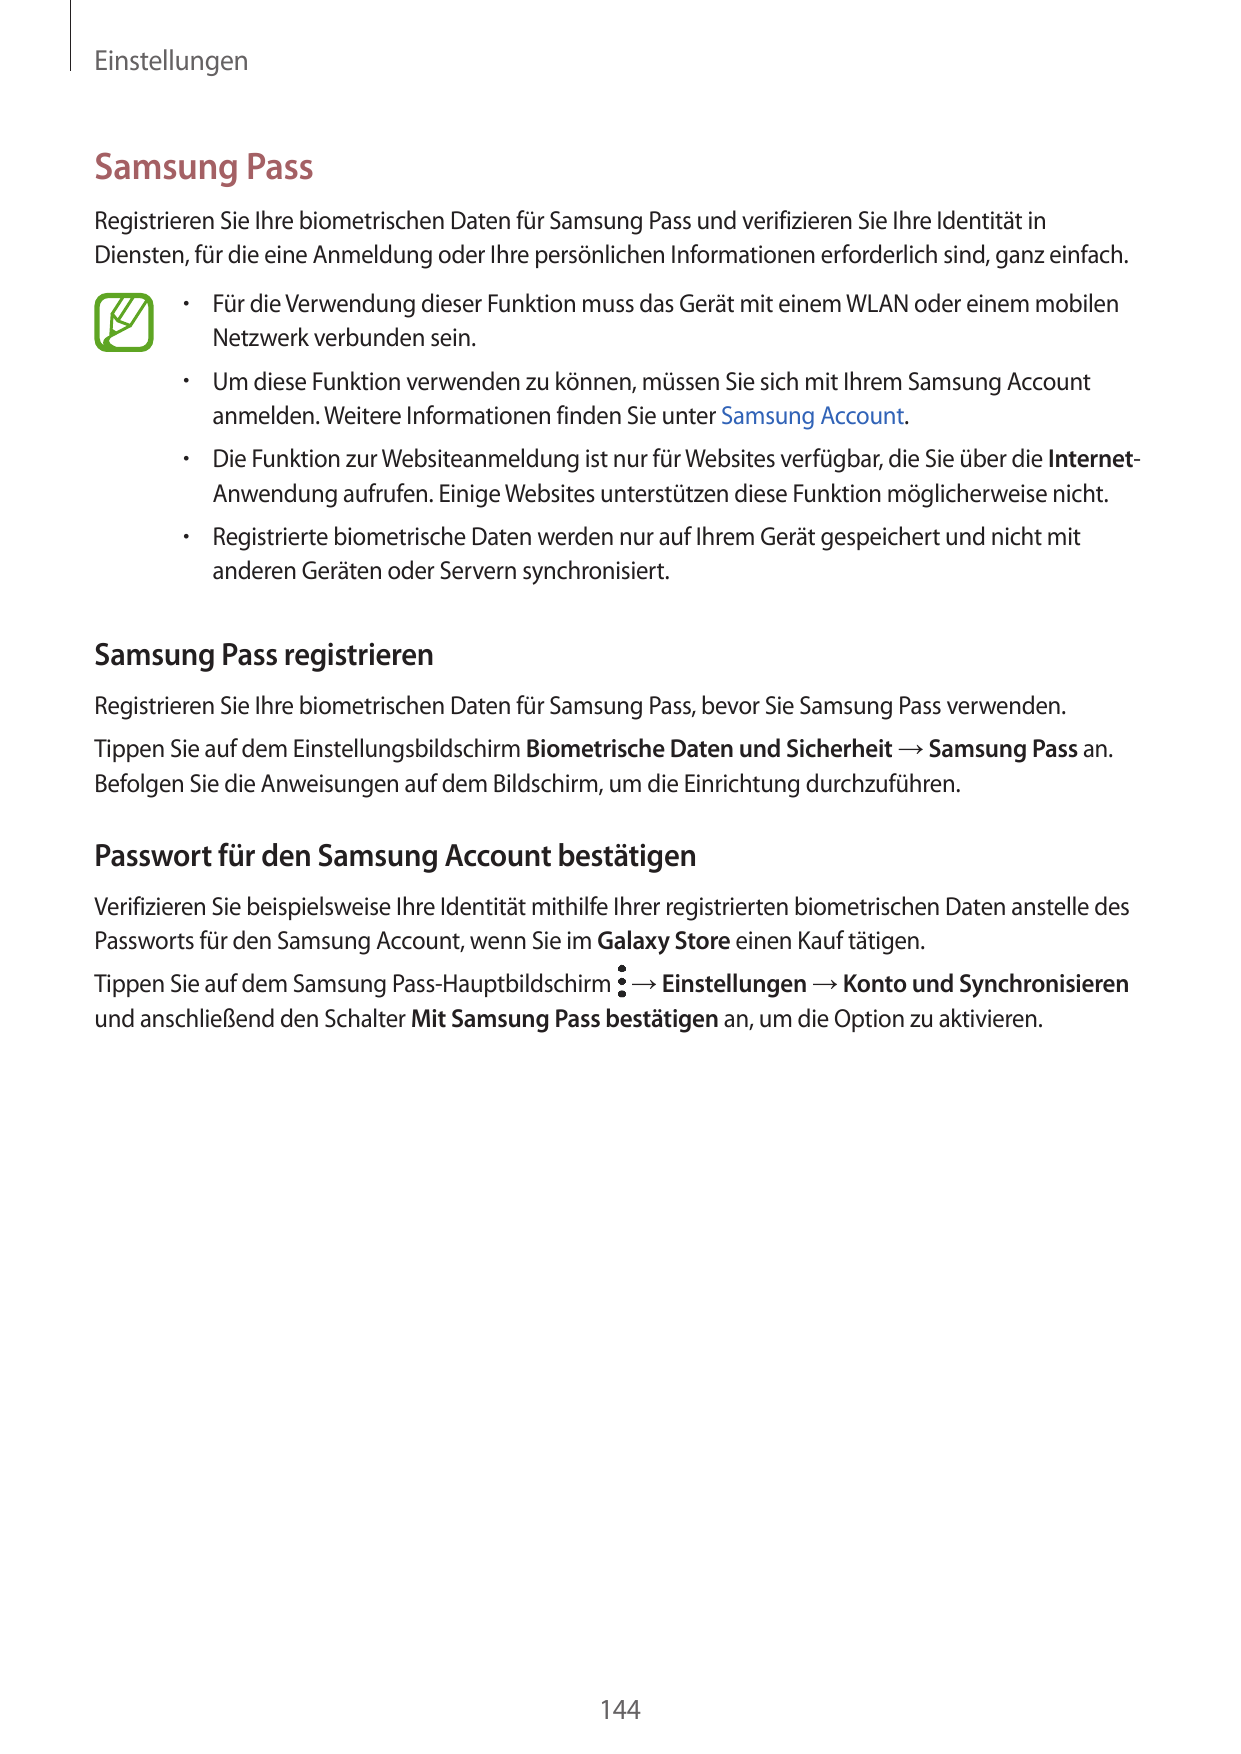 EinstellungenSamsung PassRegistrieren Sie Ihre biometrischen Daten für Samsung Pass und verifizieren Sie Ihre Identität inDienst